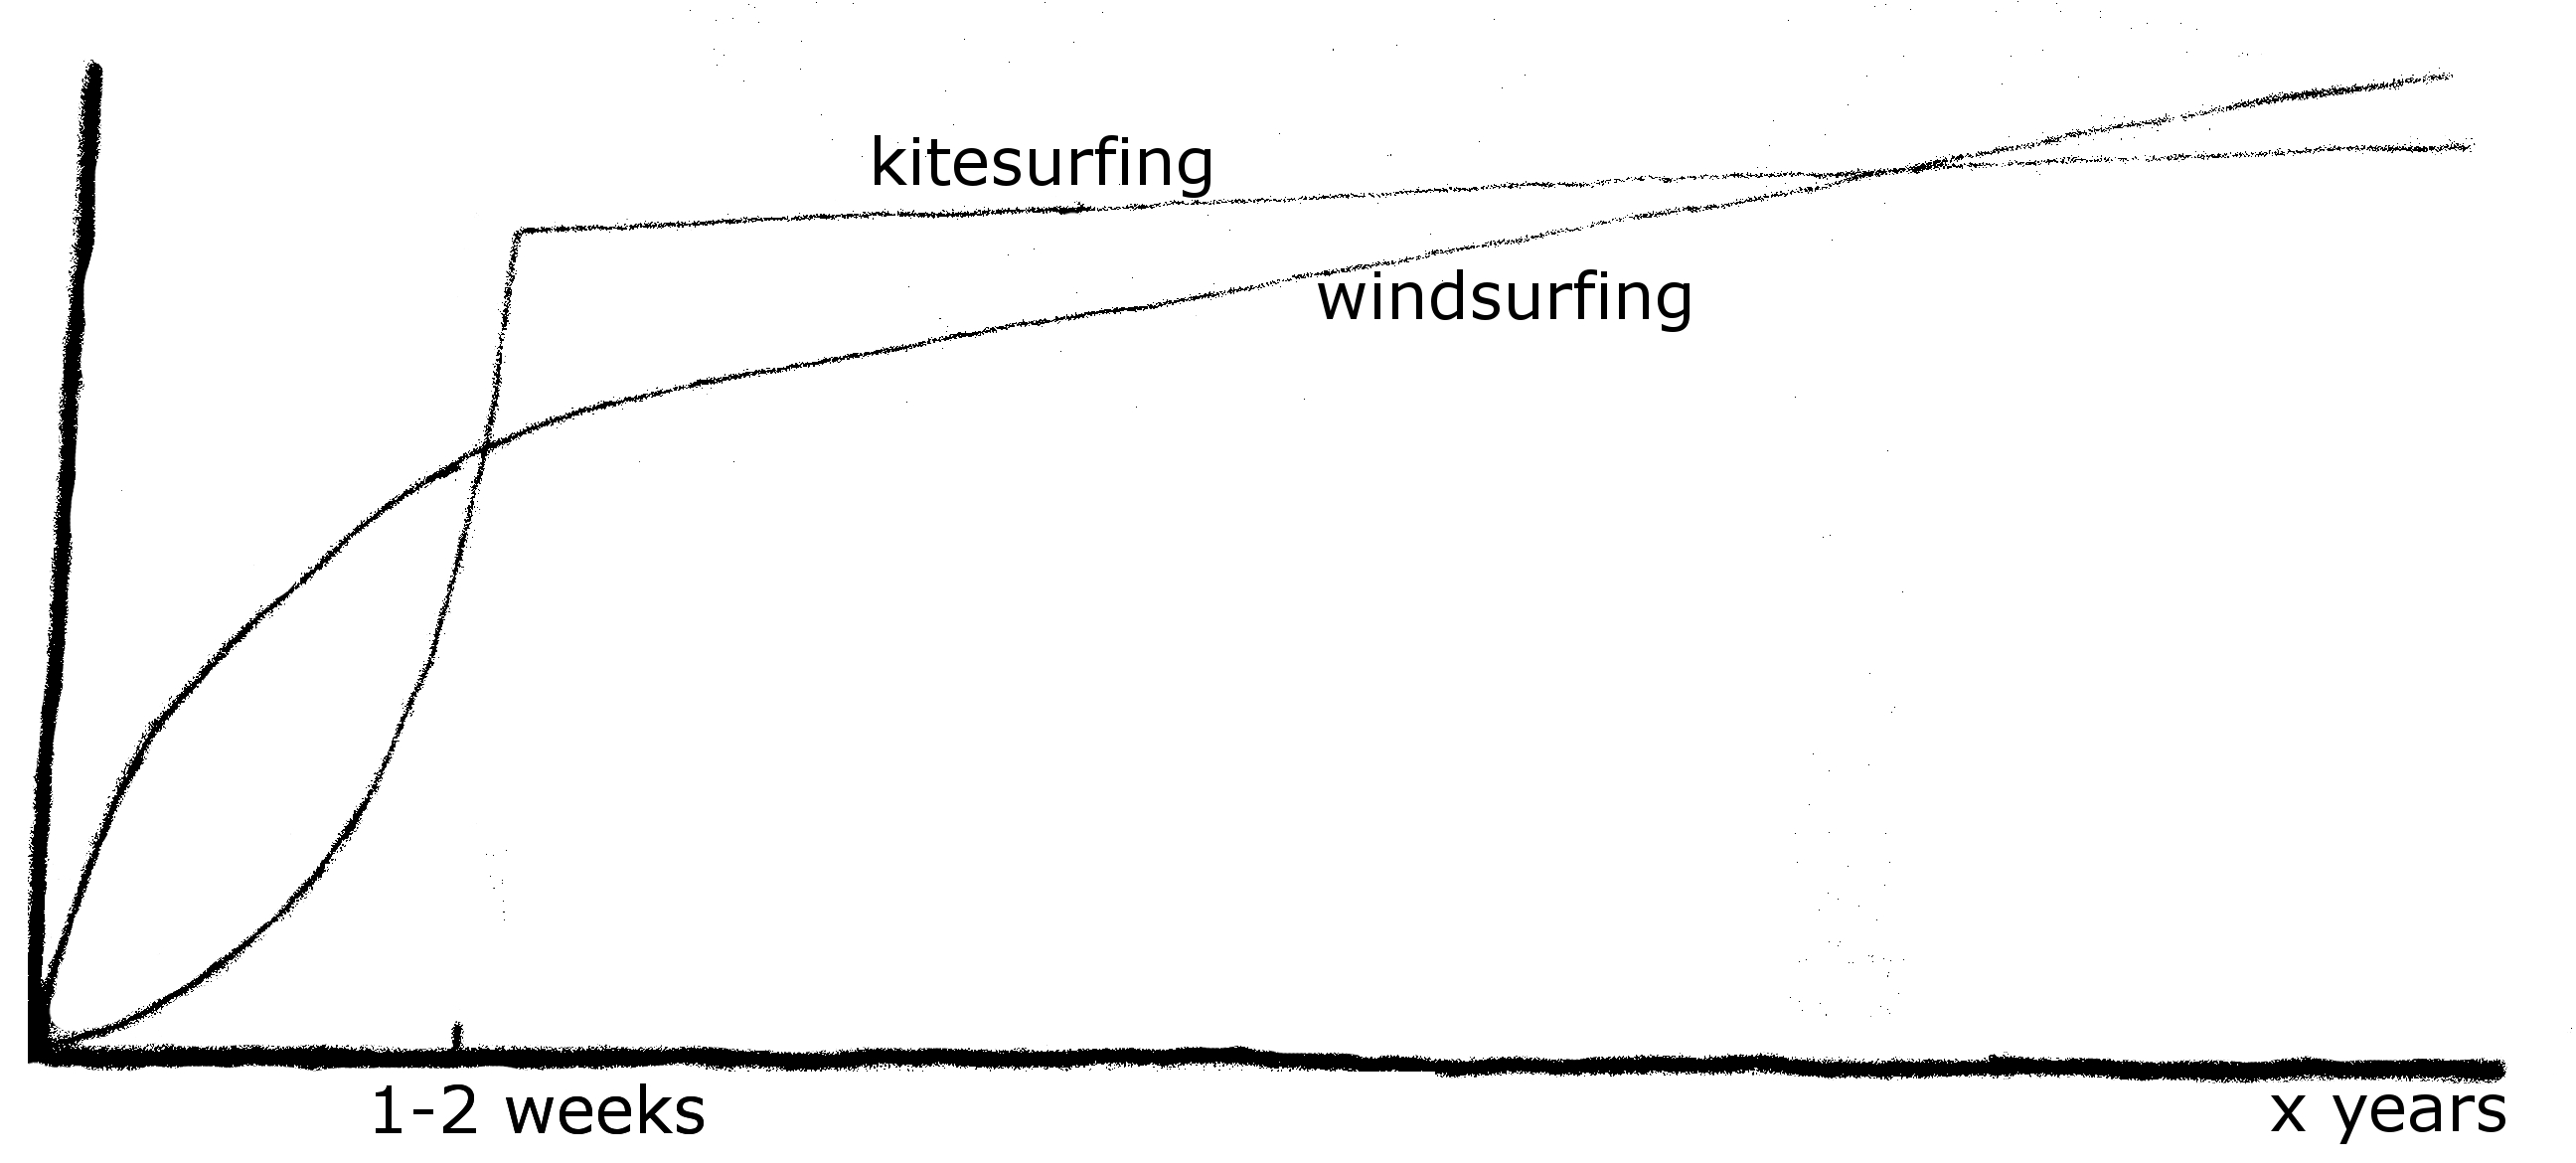 Windsurfing versus Kitesurfing - Which is better?